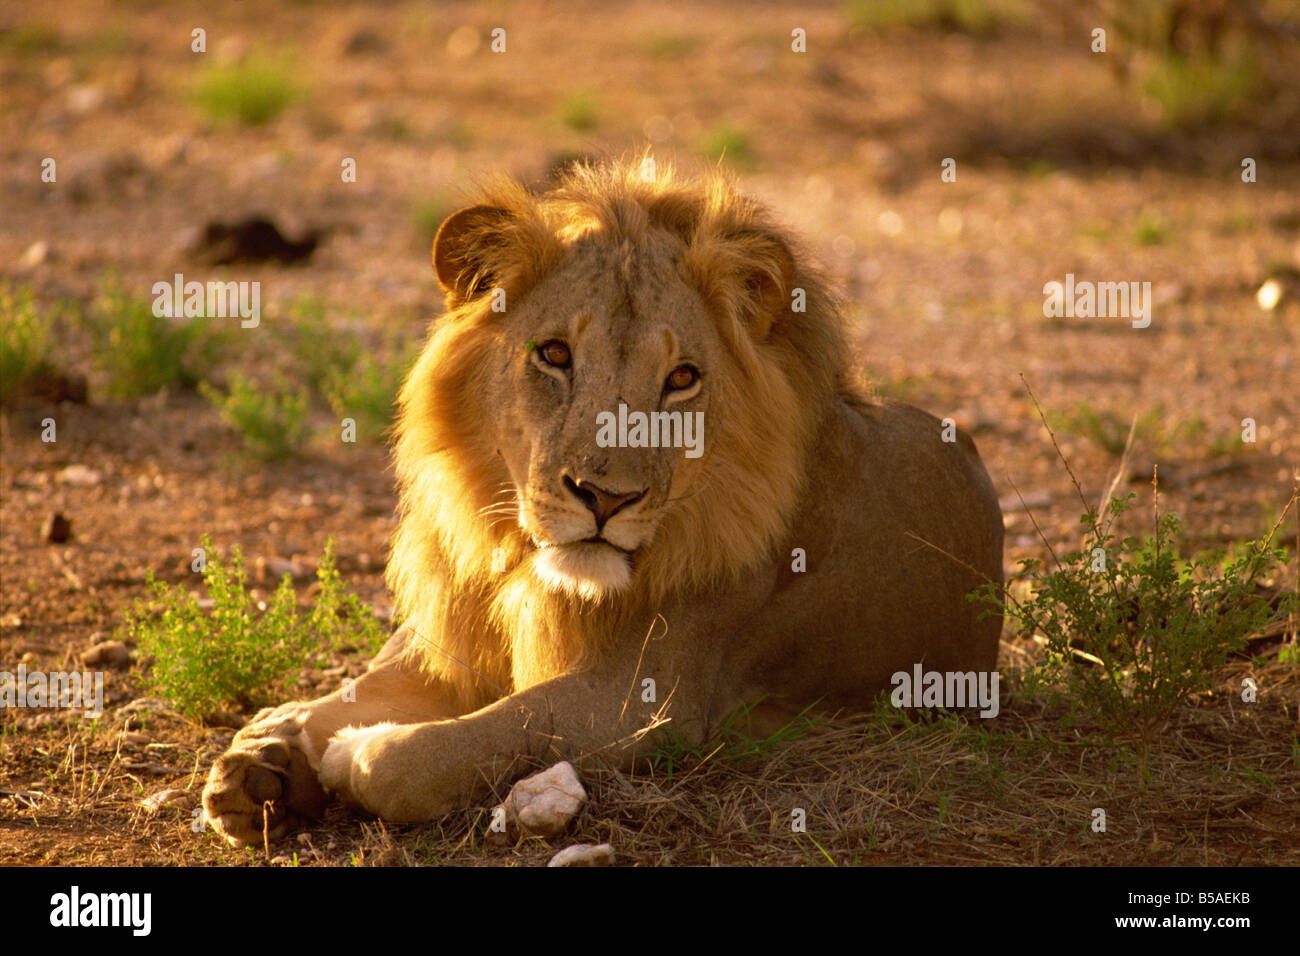 Lion mâle de la réserve nationale de Samburu, Kenya Afrique Afrique de l'Est Banque D'Images